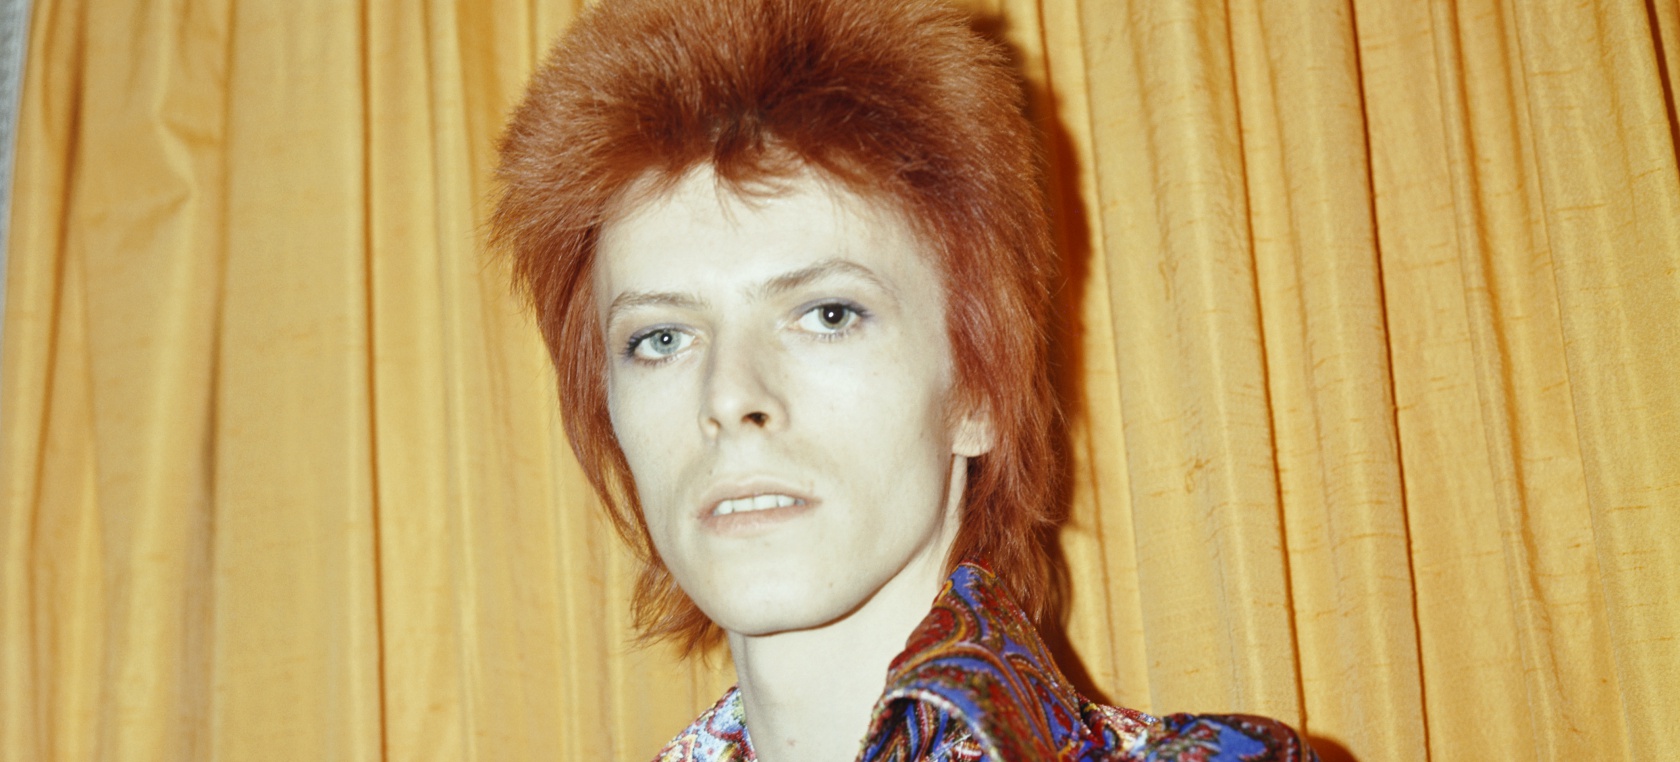 David Bowie: los músicos rinden tributo al genio 5 años después de su muerte